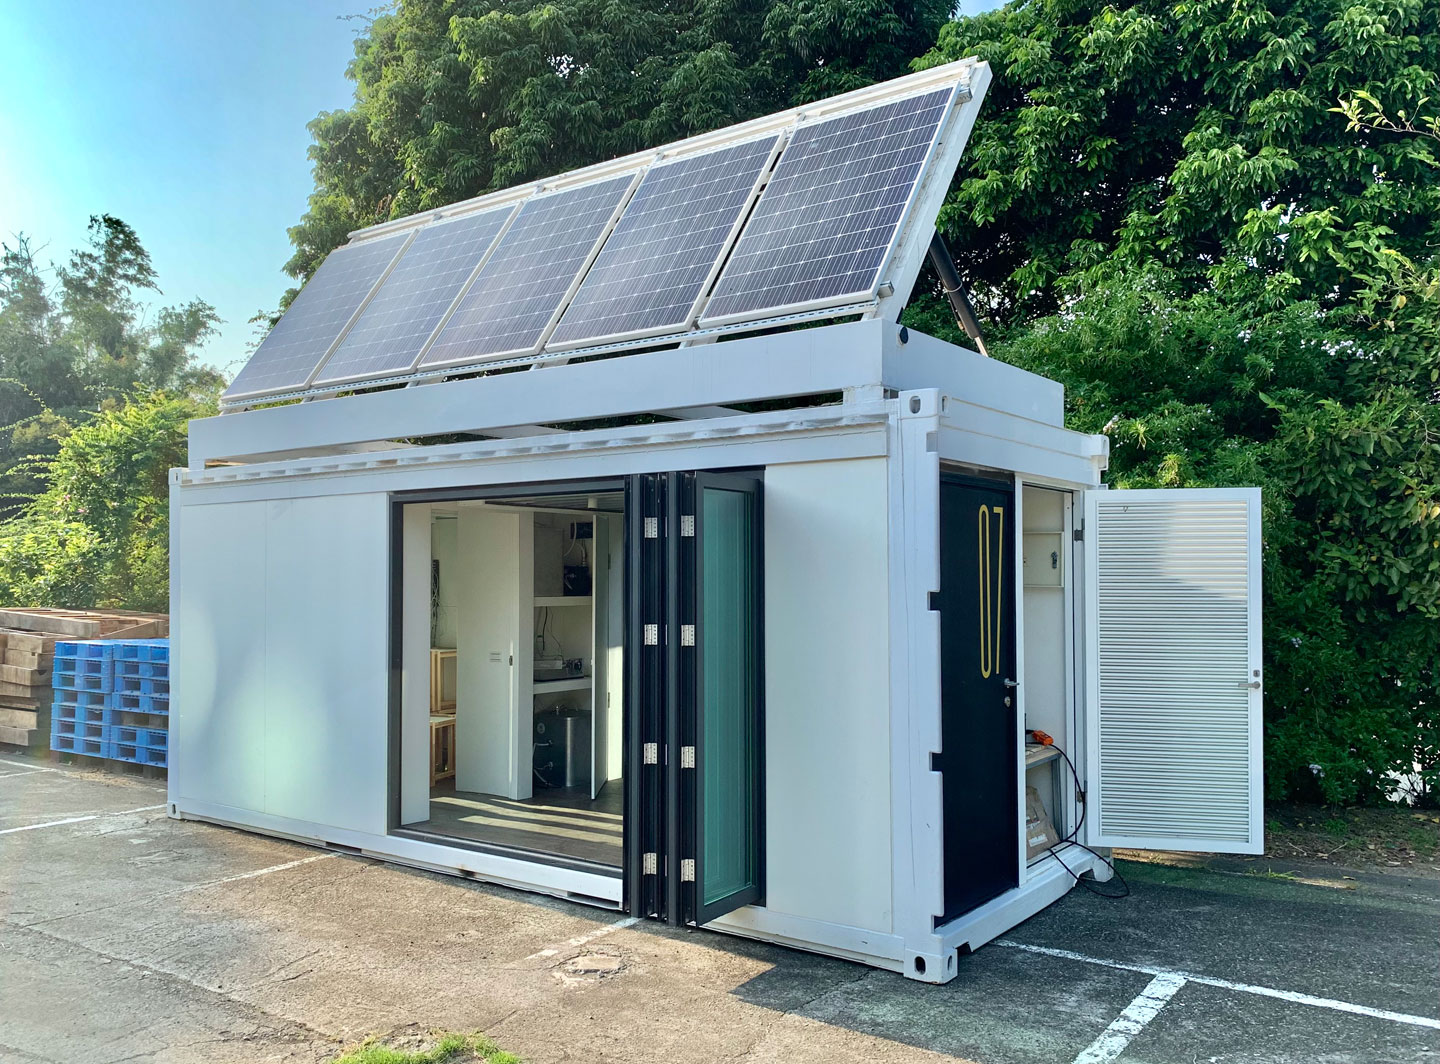 可移動式社區型 AIoT 貨櫃屋可整合太陽能發電系統並獨立運作。